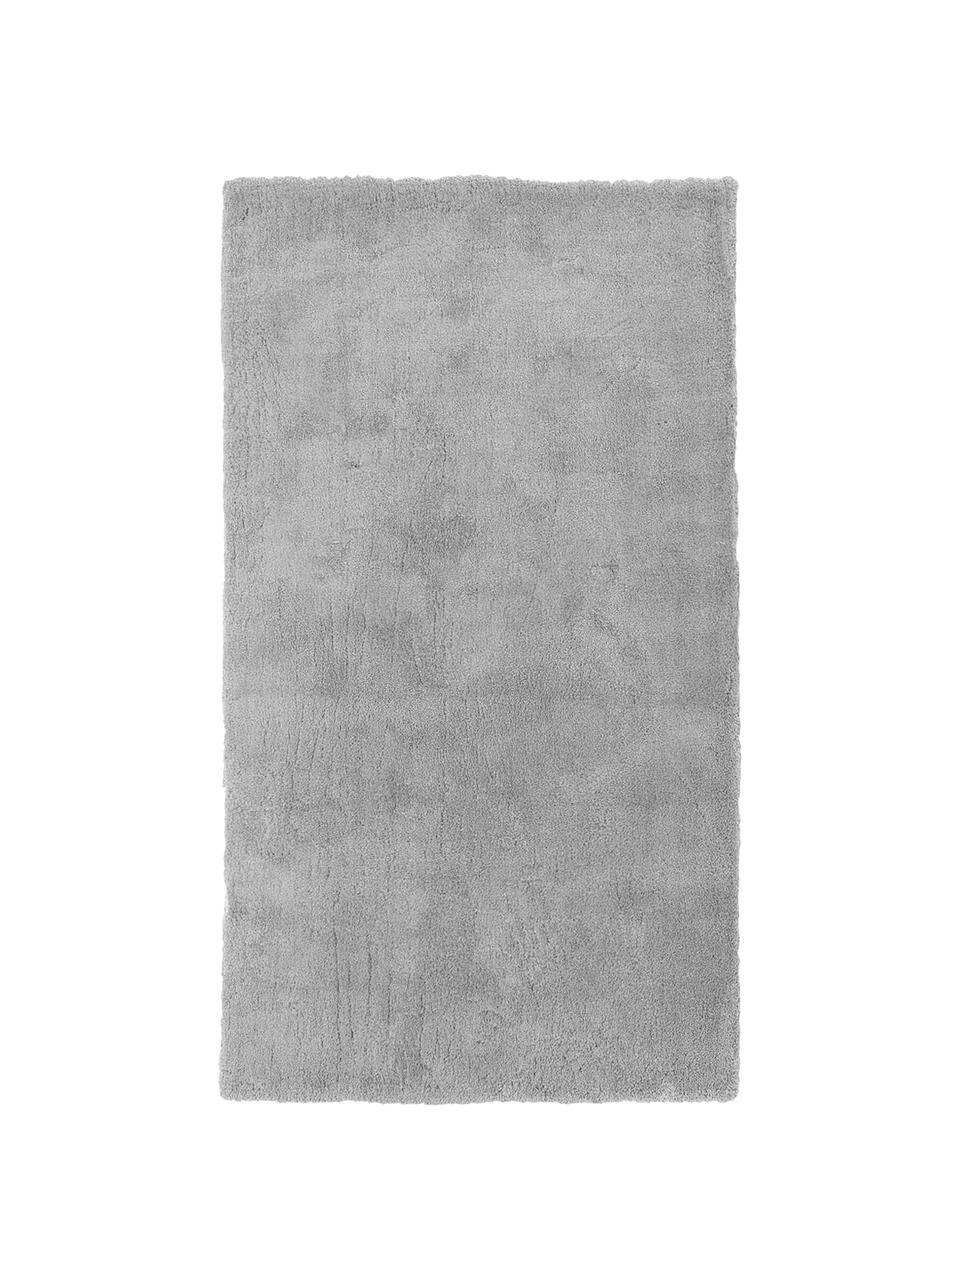 Pluizig hoogpolig vloerkleed Leighton in grijs, Microvezel, Grijs, 300 x 400 cm